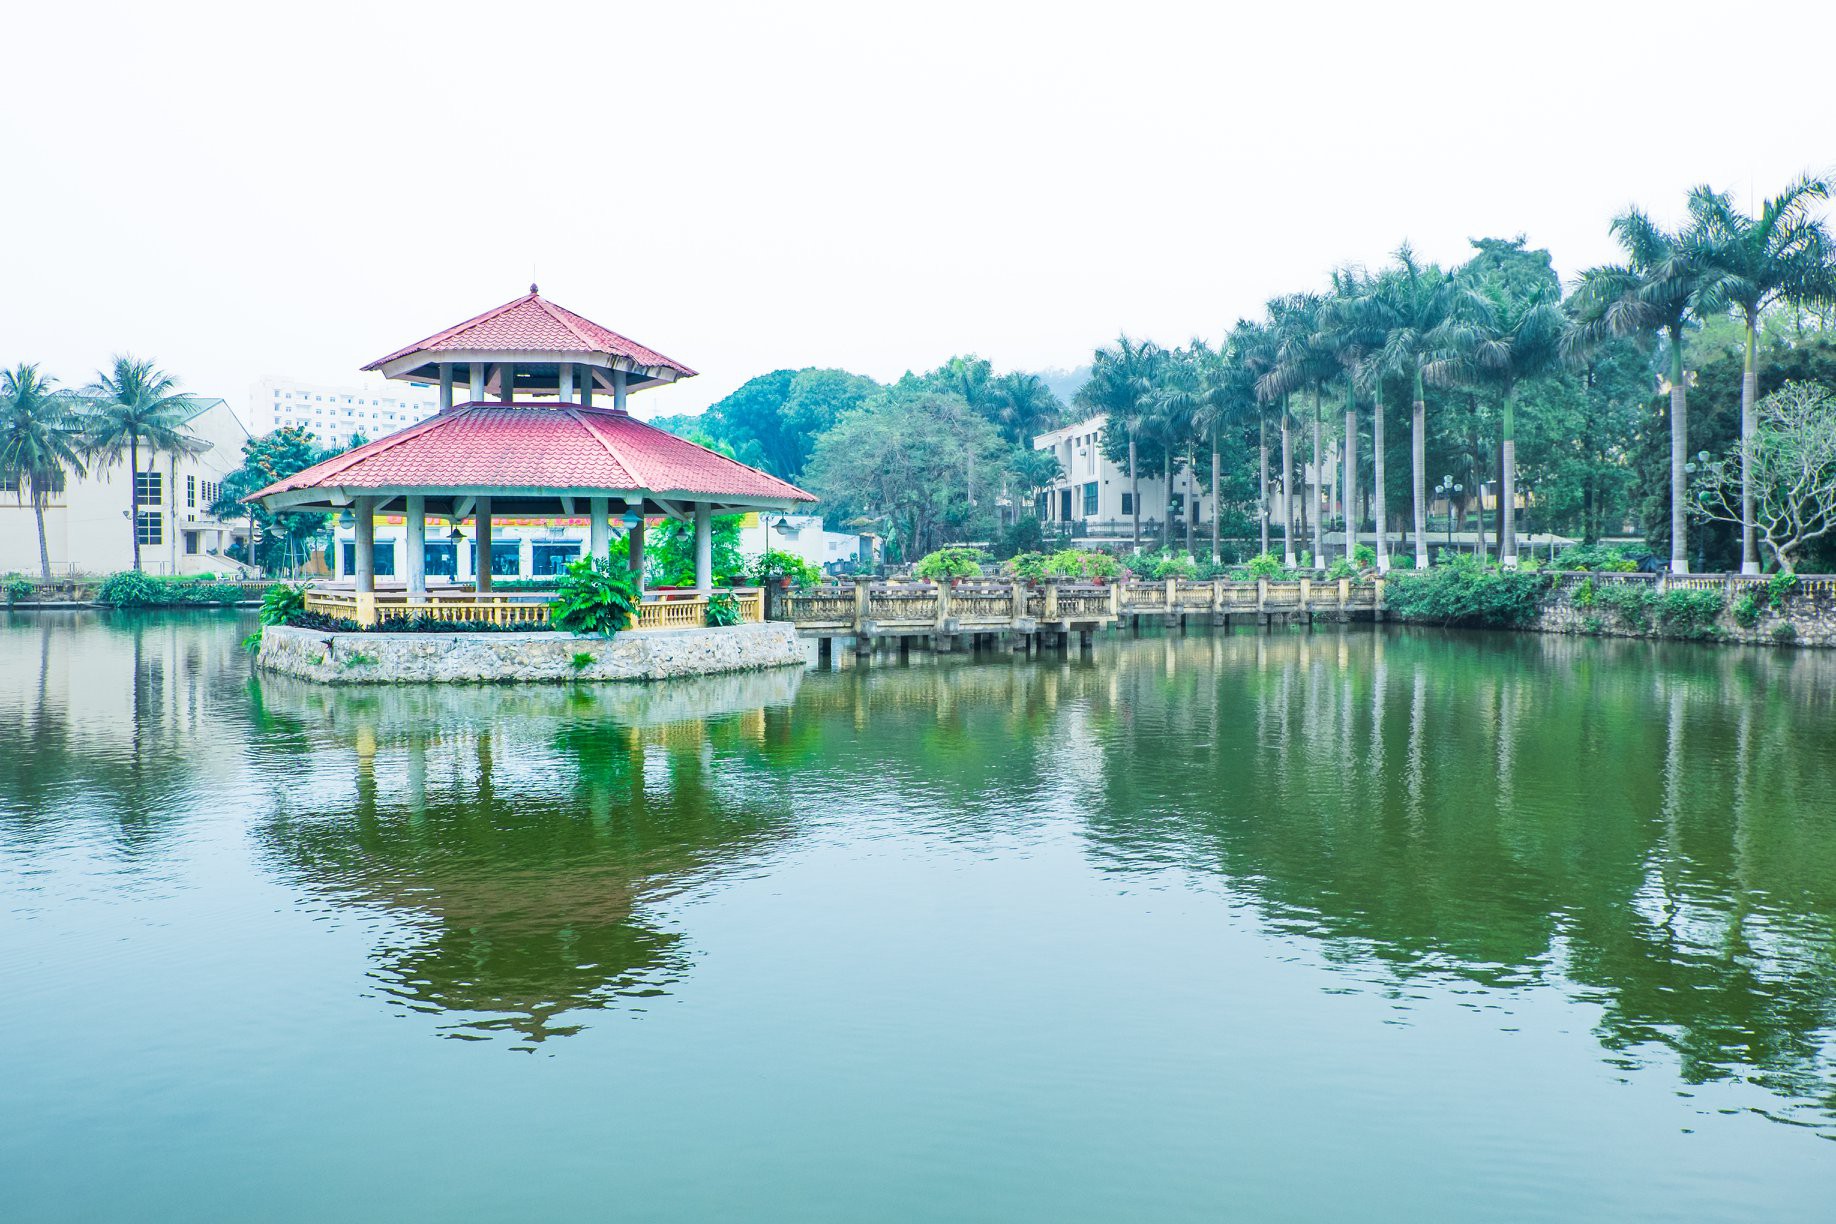 Hồ Thủy Đình nằm ngay cạnh đường dẫn vào khuôn viên trường Đại học Lâm nghiệp.